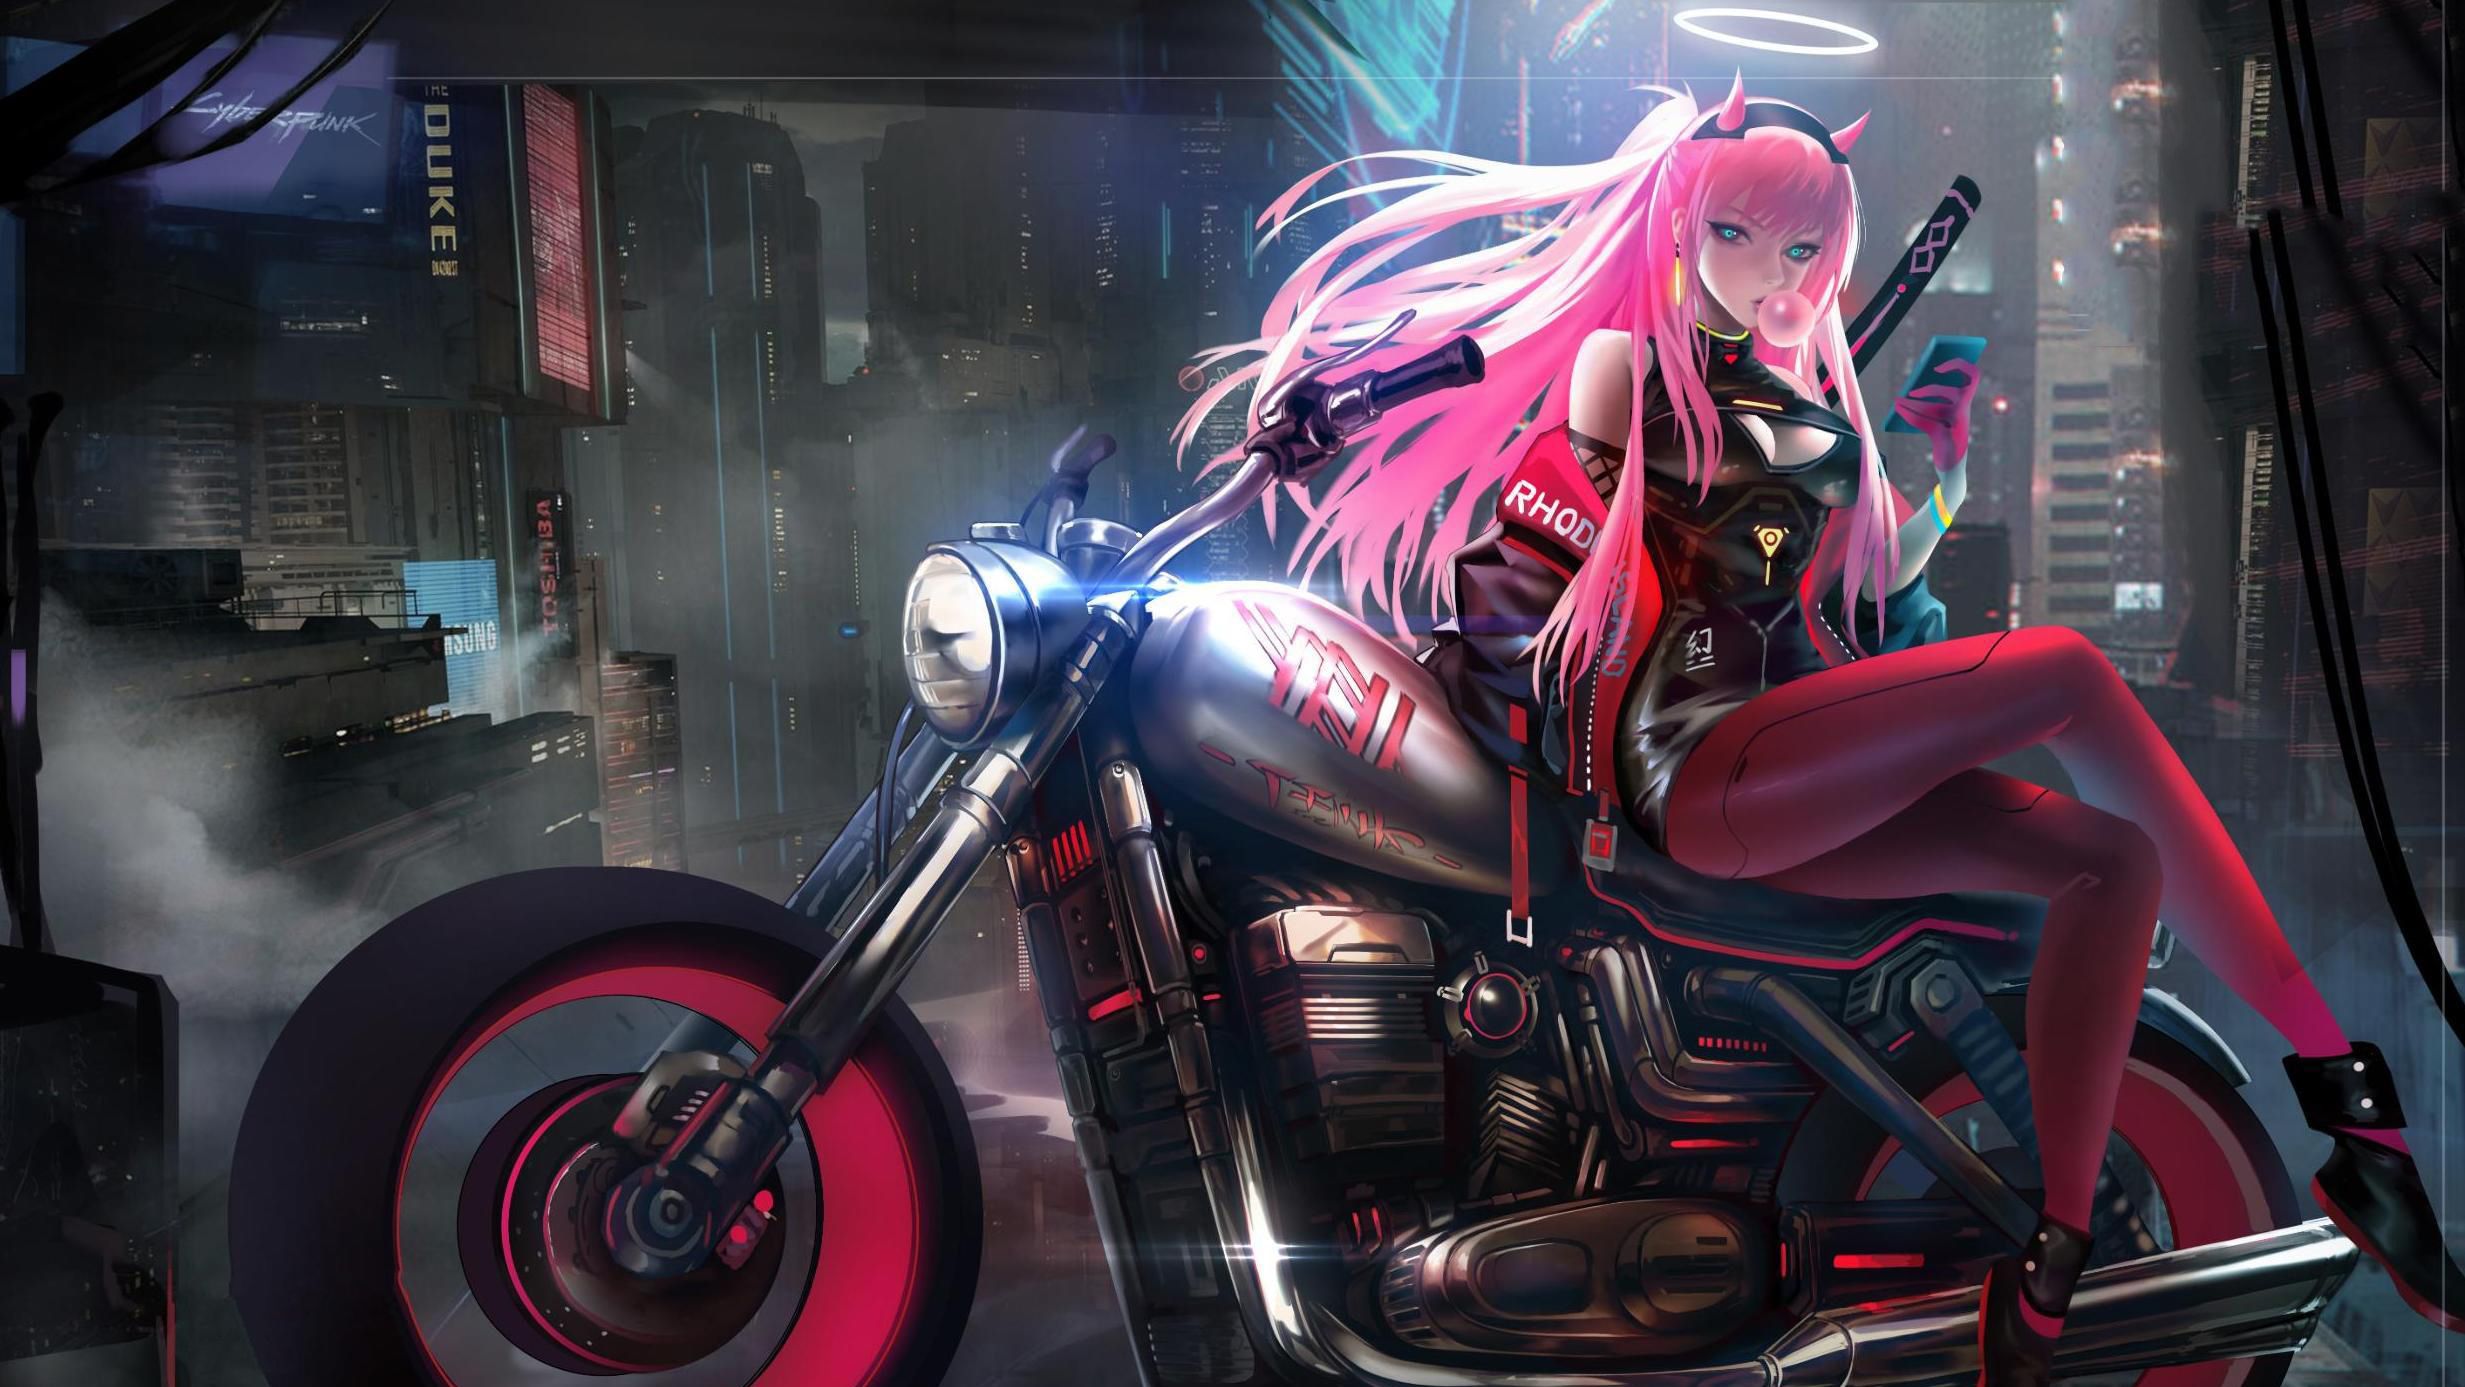 Anime Girl On Bike Art, HD Artist, 4k .hdqwalls.com